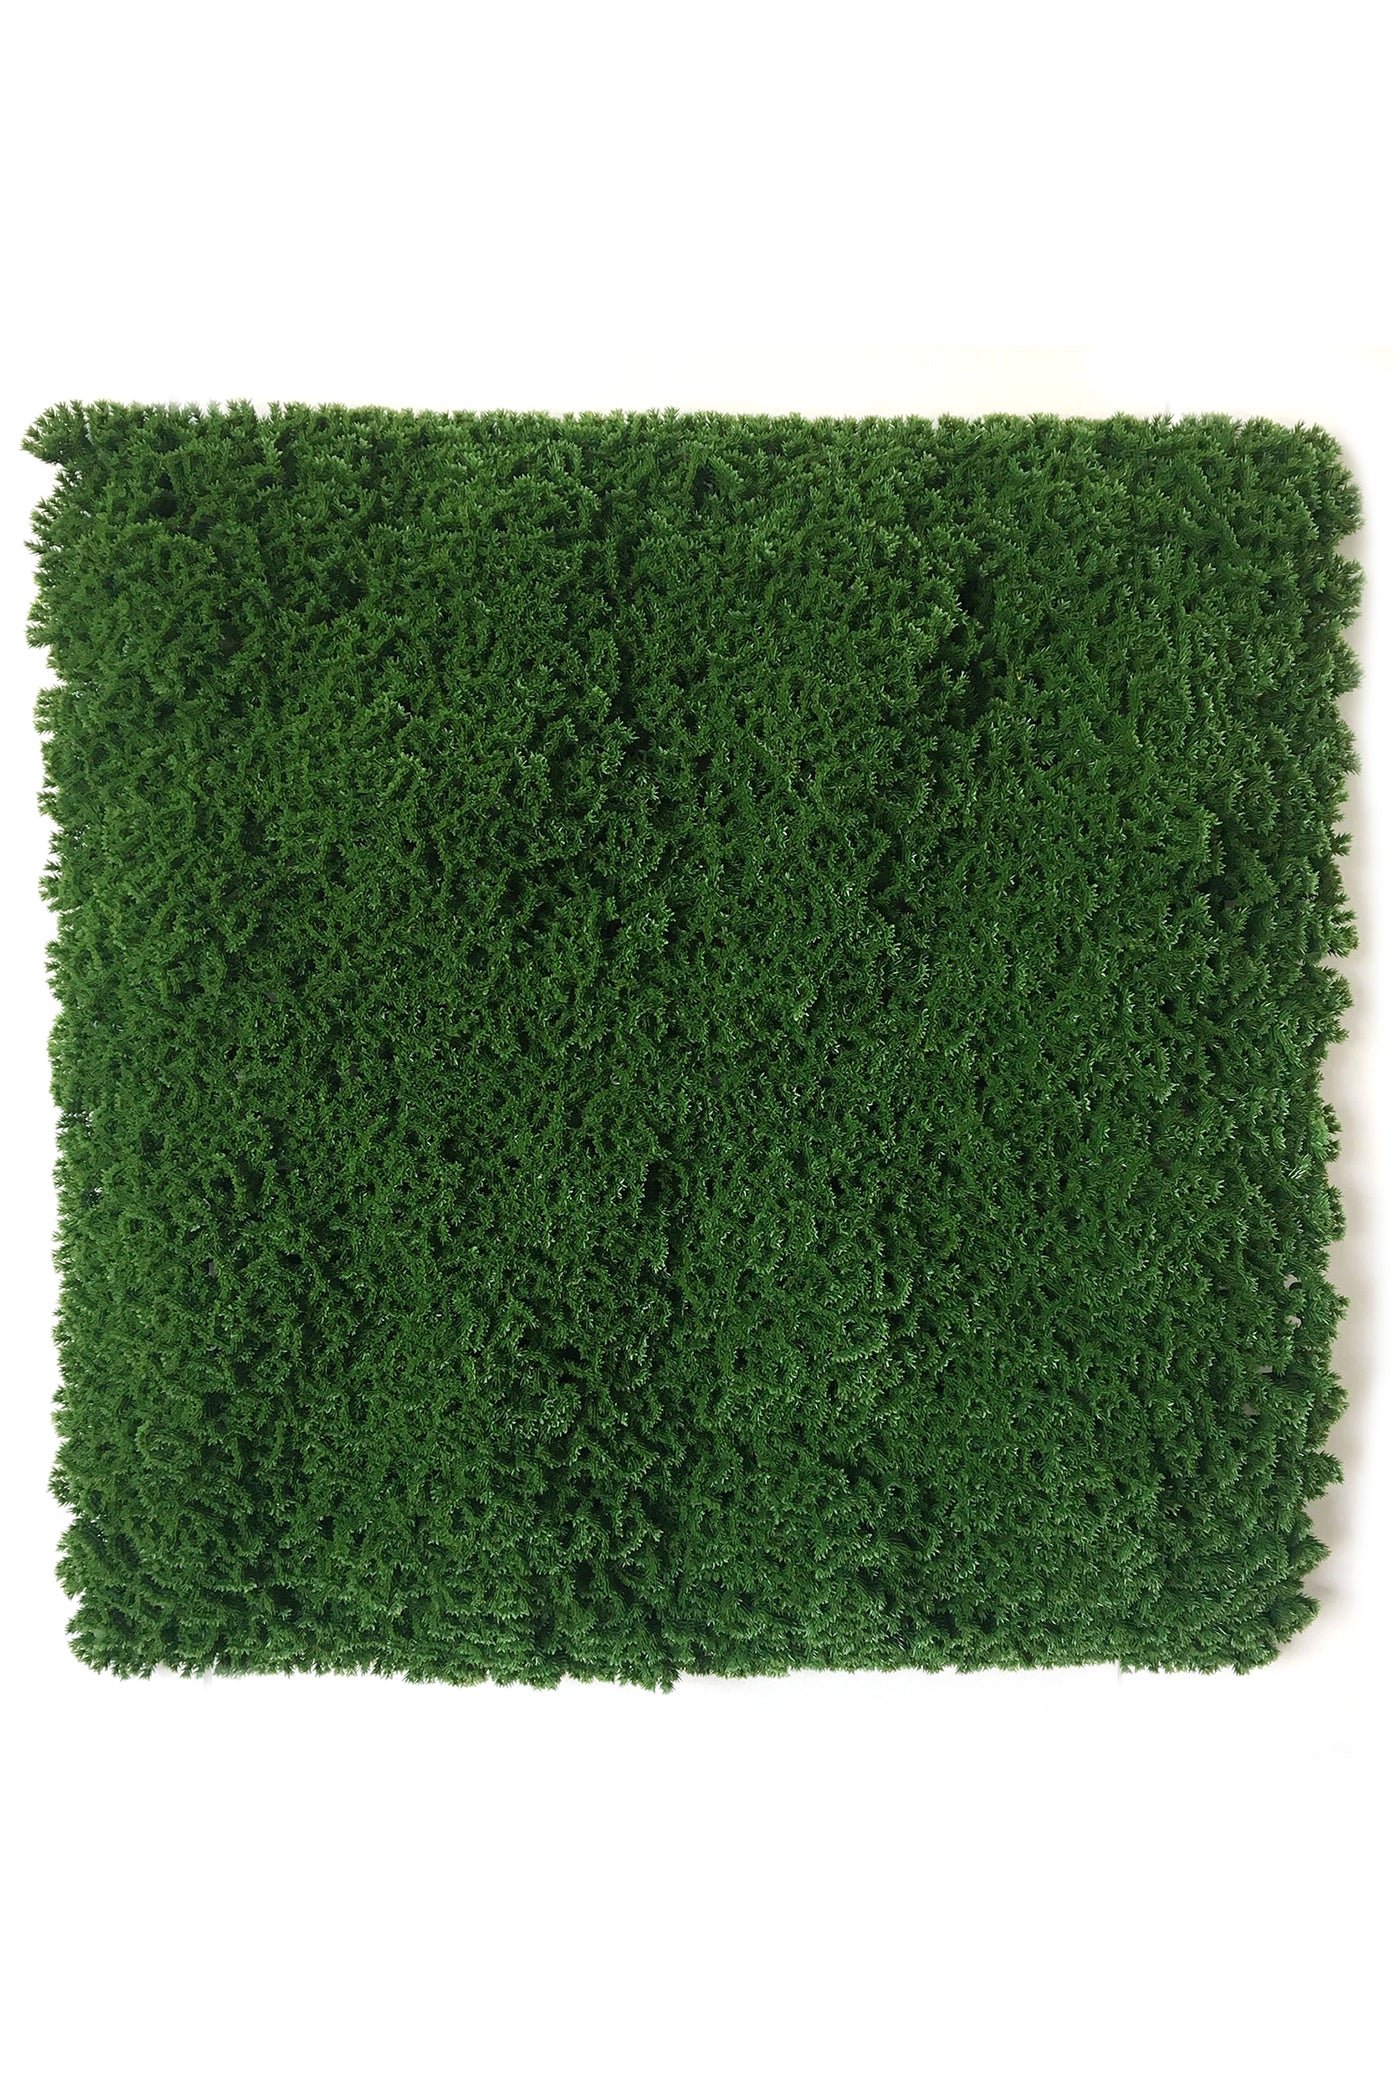 Artificial Dark Green Vertical Garden Tiles for Outdoor and Indoor Use (Pack of 1)